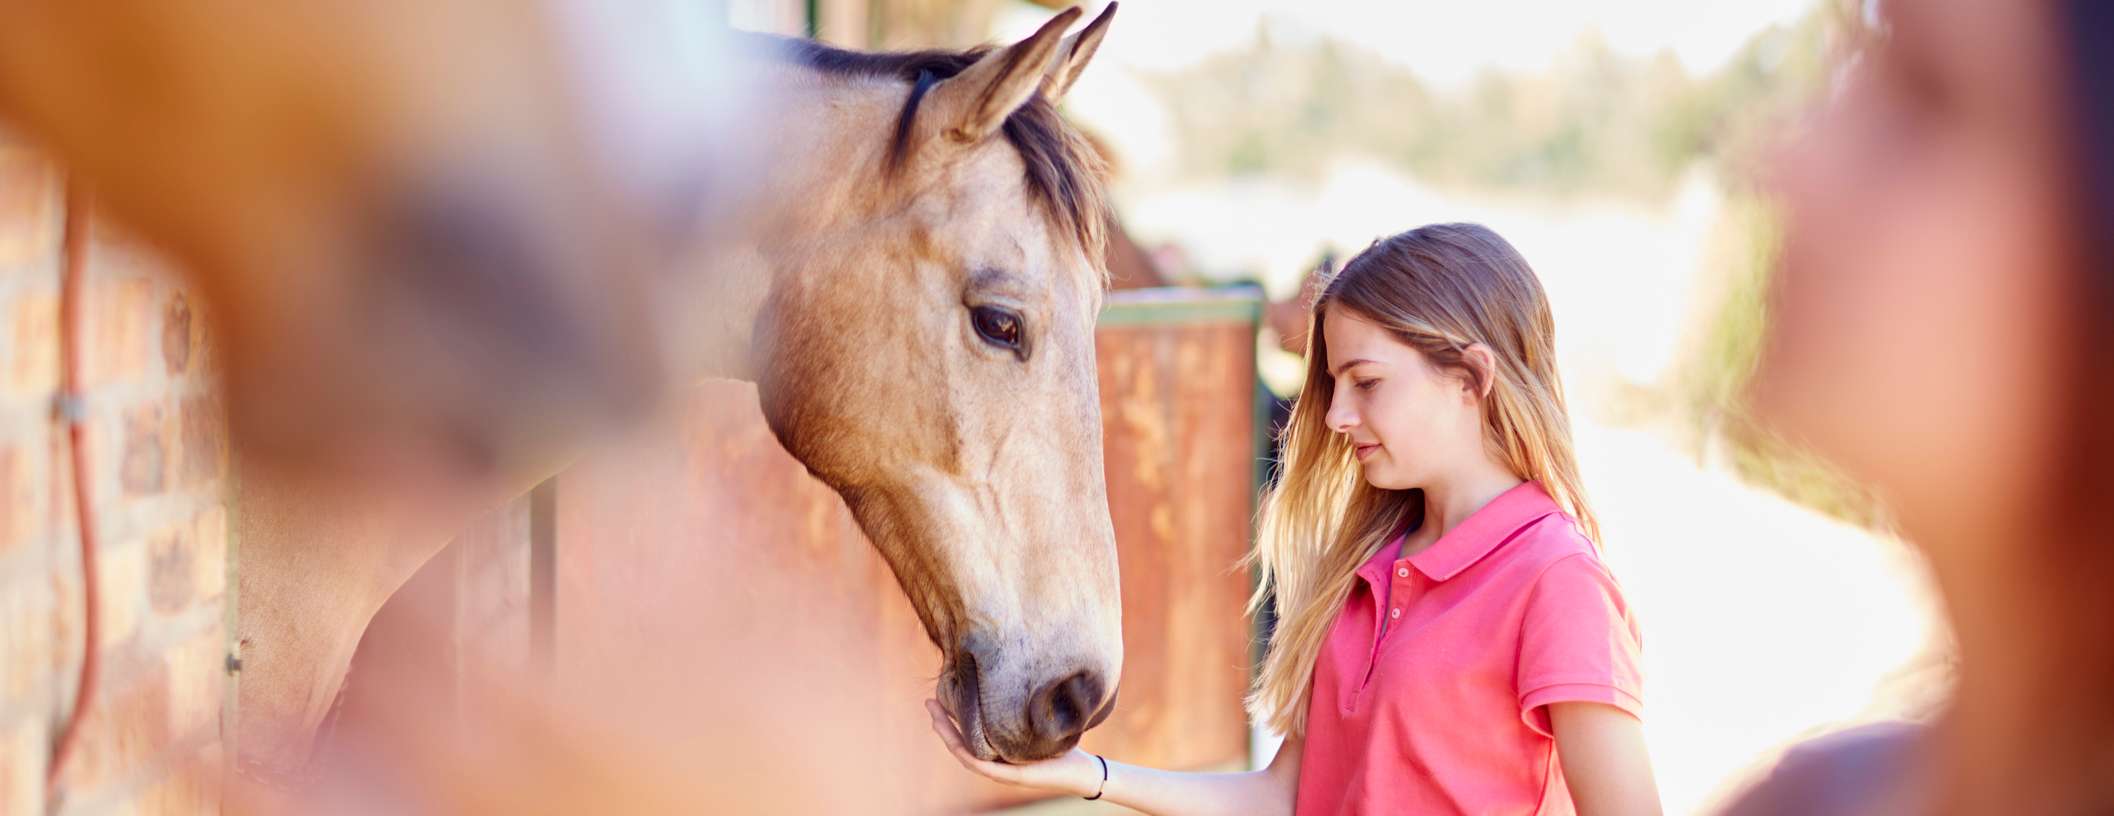 Allianz – Frauen füttern Pferde am Stall